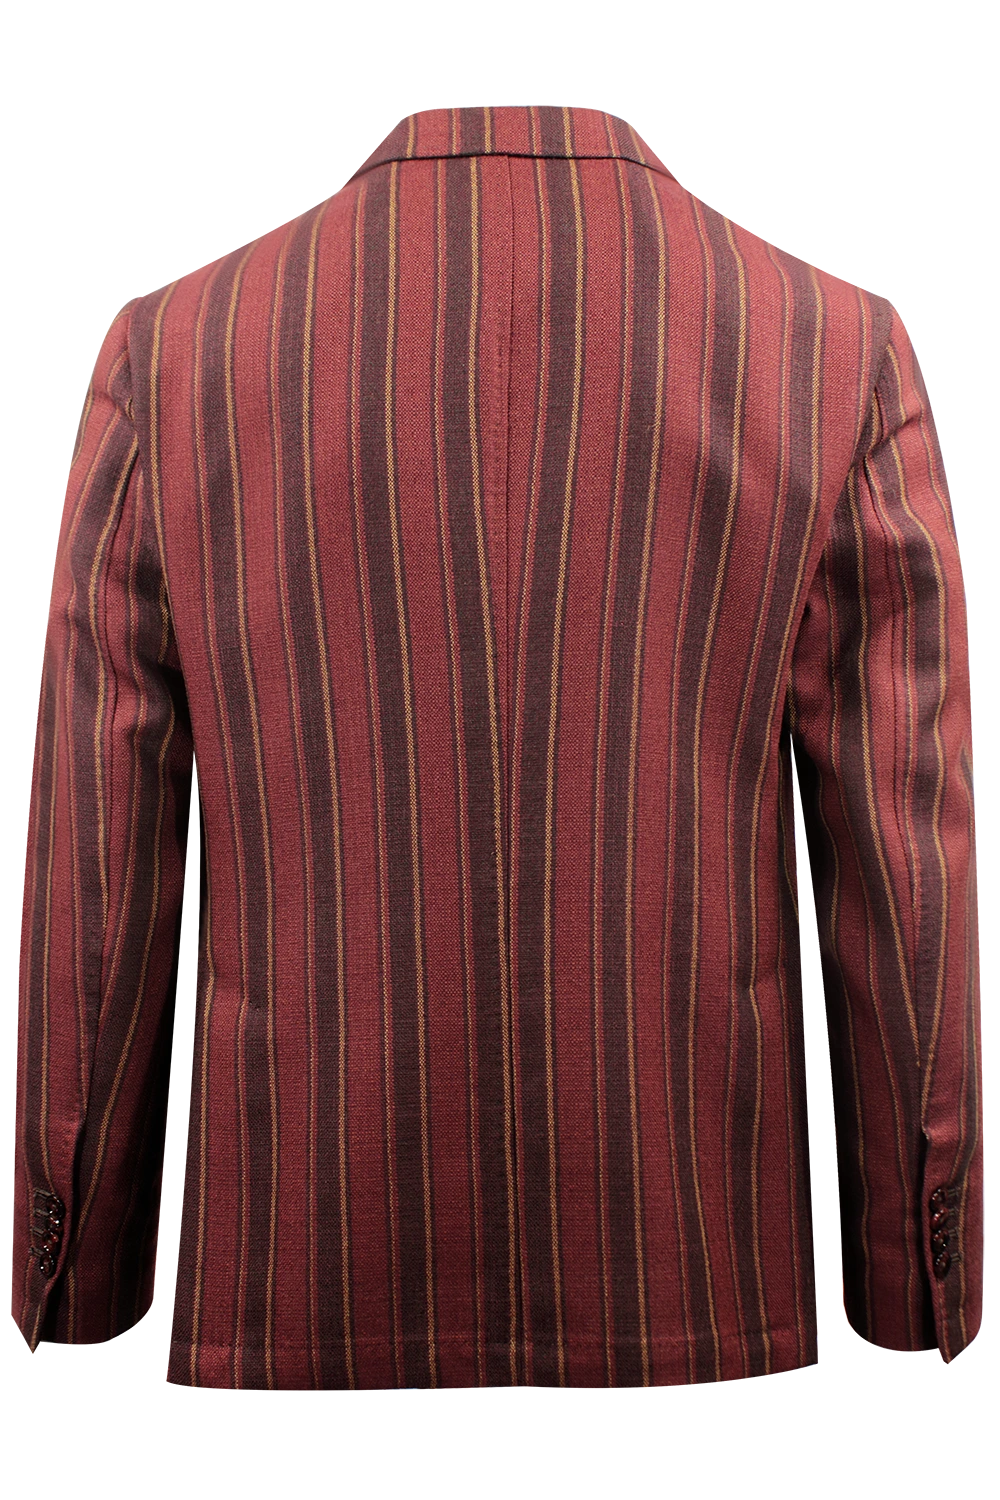 Giacca doppiopetto in lana rossa a righe retro